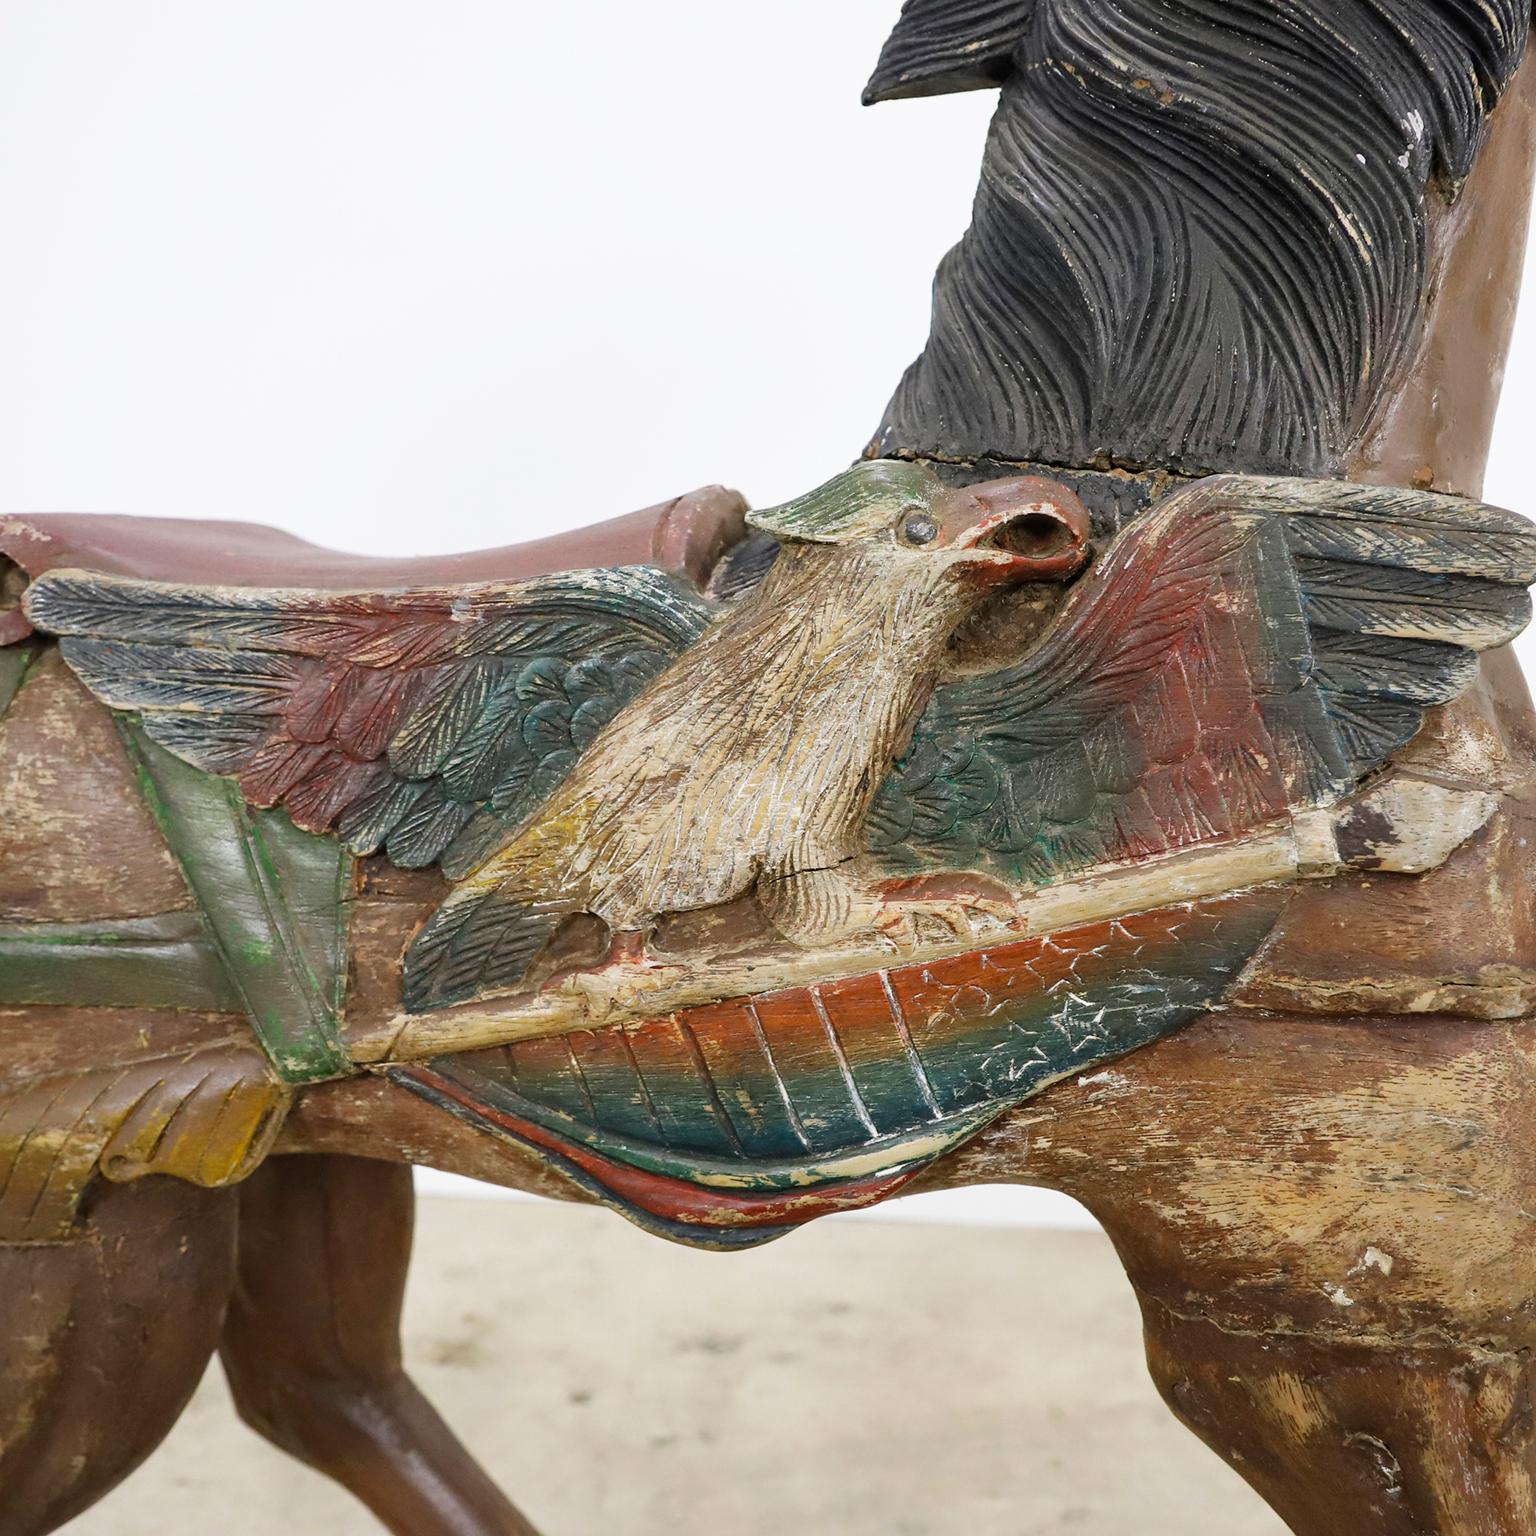 Ca. 1920. Wir bieten dieses wunderbar charmante Karussellpferd aus Mexiko an. Handgefertigt aus Holz ausgehöhlt  mit fabelhafter Patina.